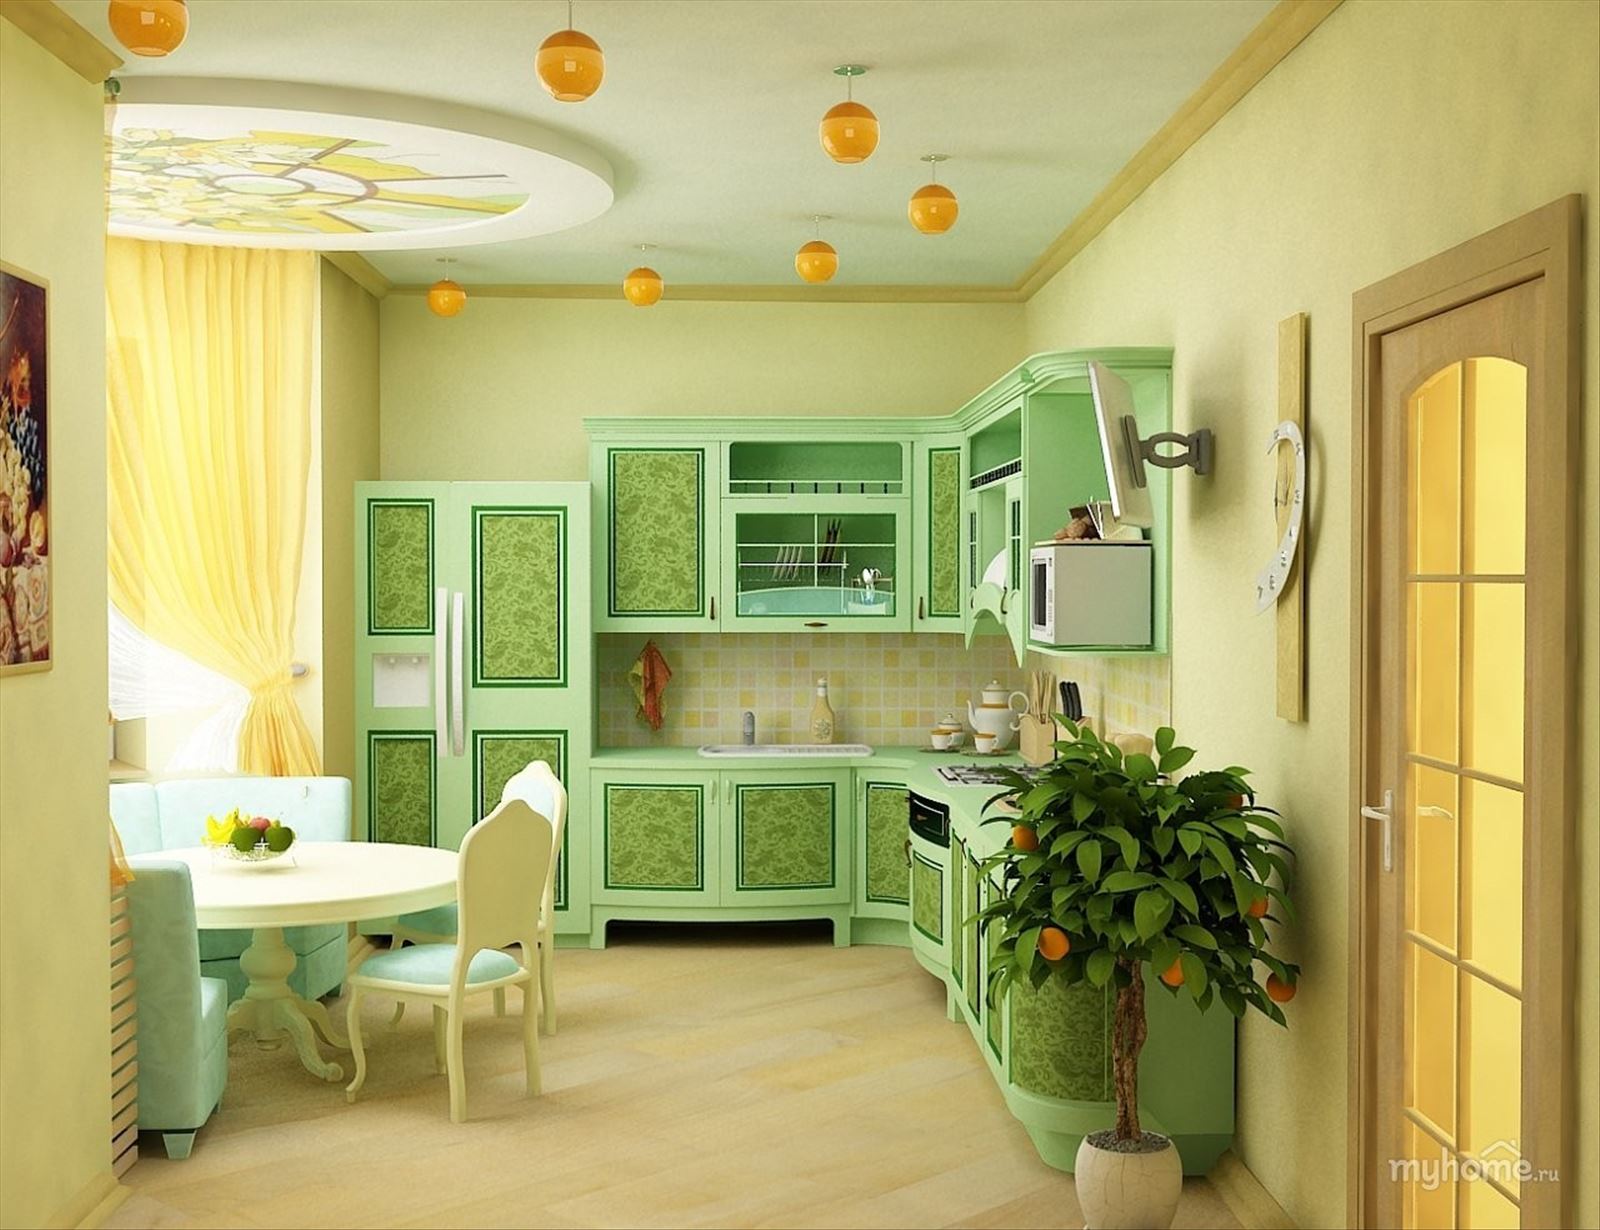 Желто зеленая кухня. Кухня в зеленых тонах. Интерьер кухни в салатовых тонах. Фисташковая кухня. Салатовая кухня в интерьере.